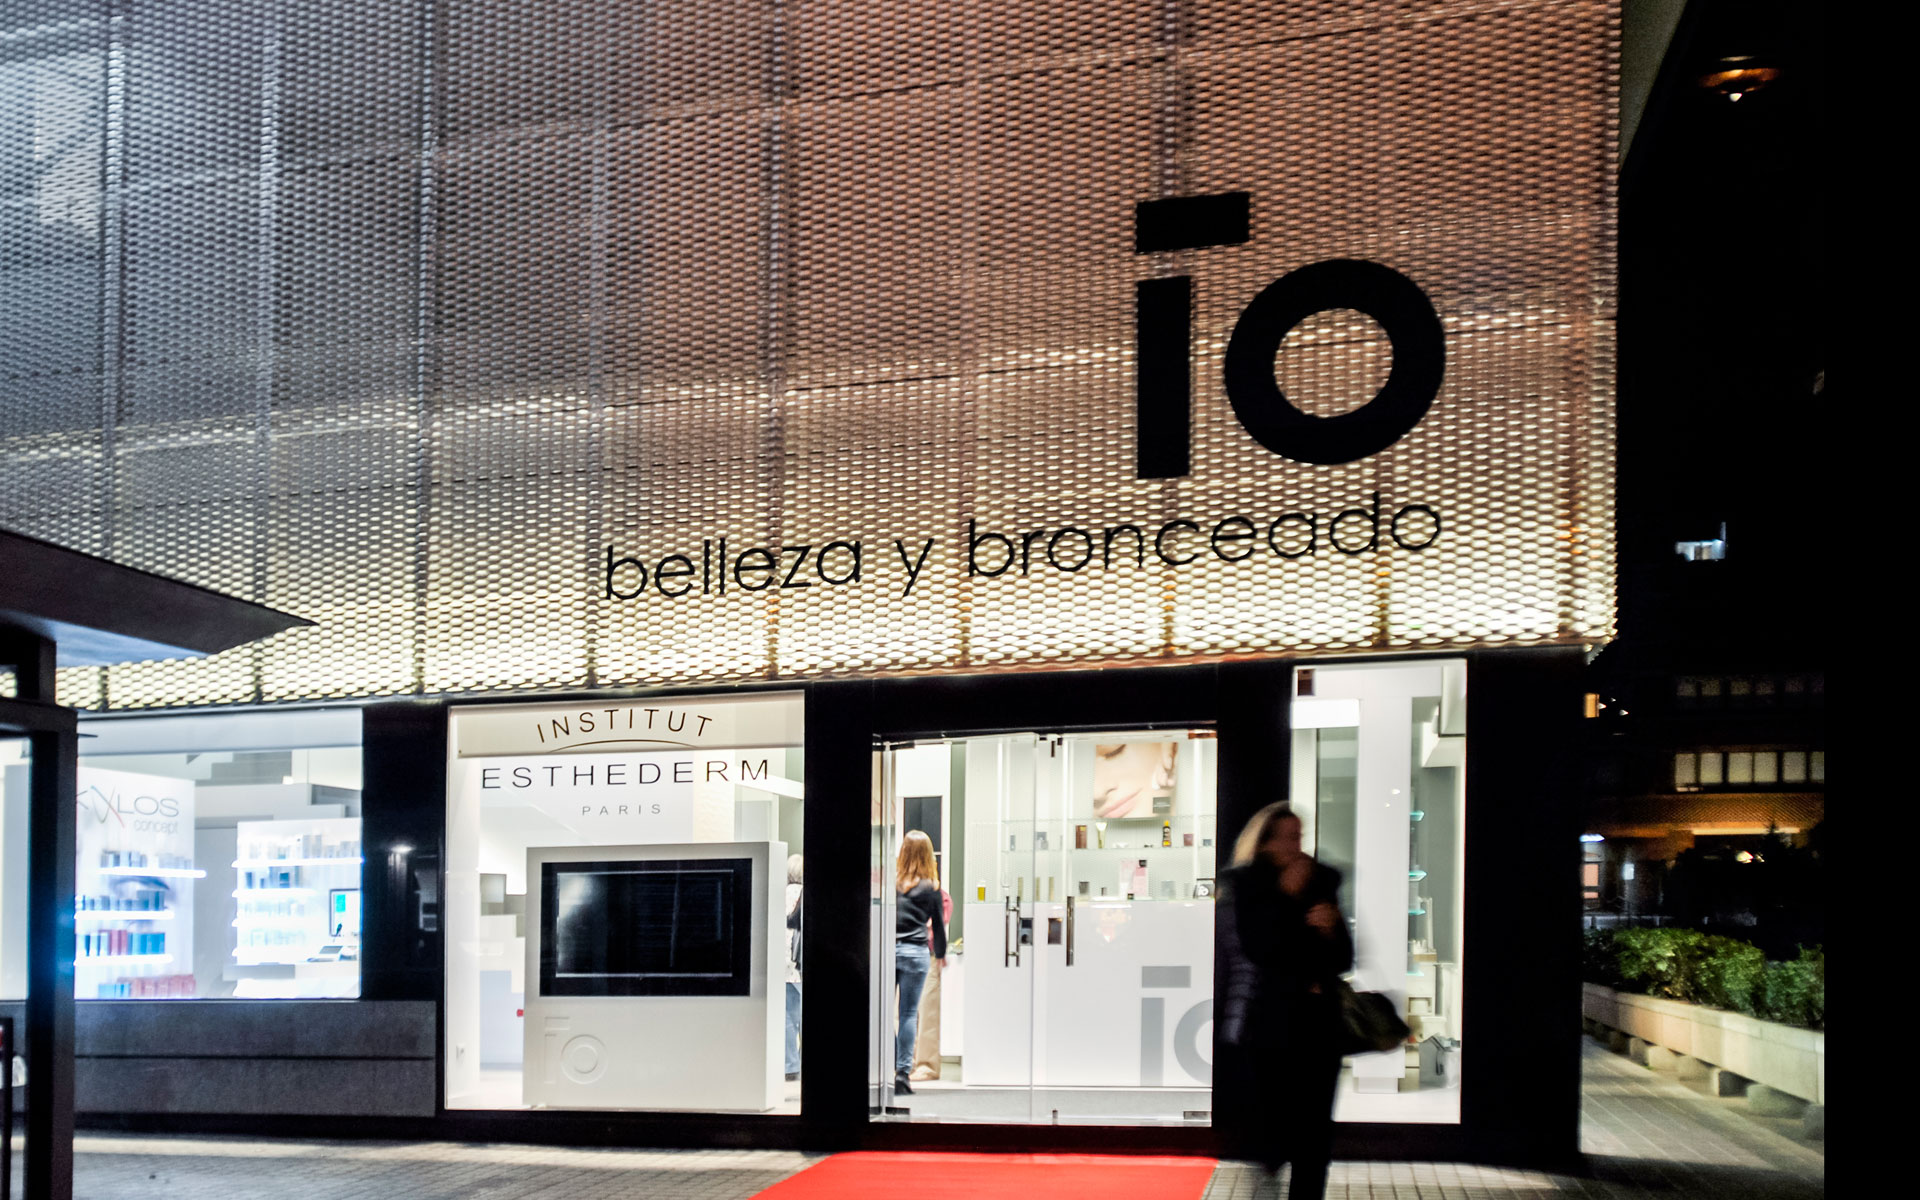 Centro de belleza IO en Madrid